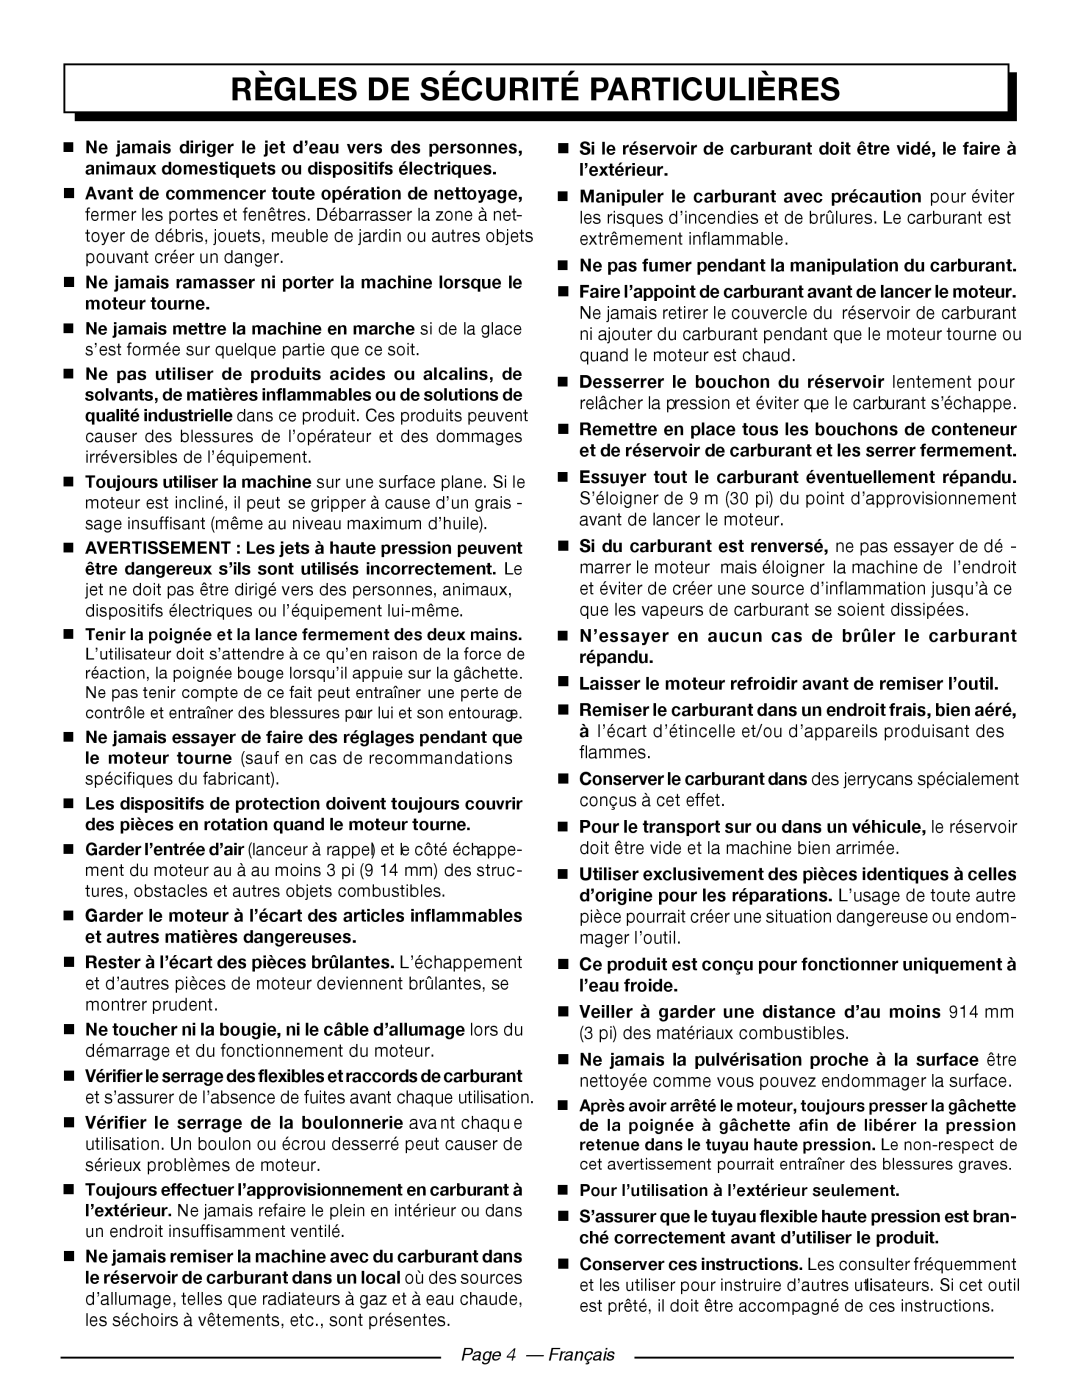 Homelite UT80709, UT80911 manuel dutilisation Règles De Sécurité Particulières, Page 4 - Français 